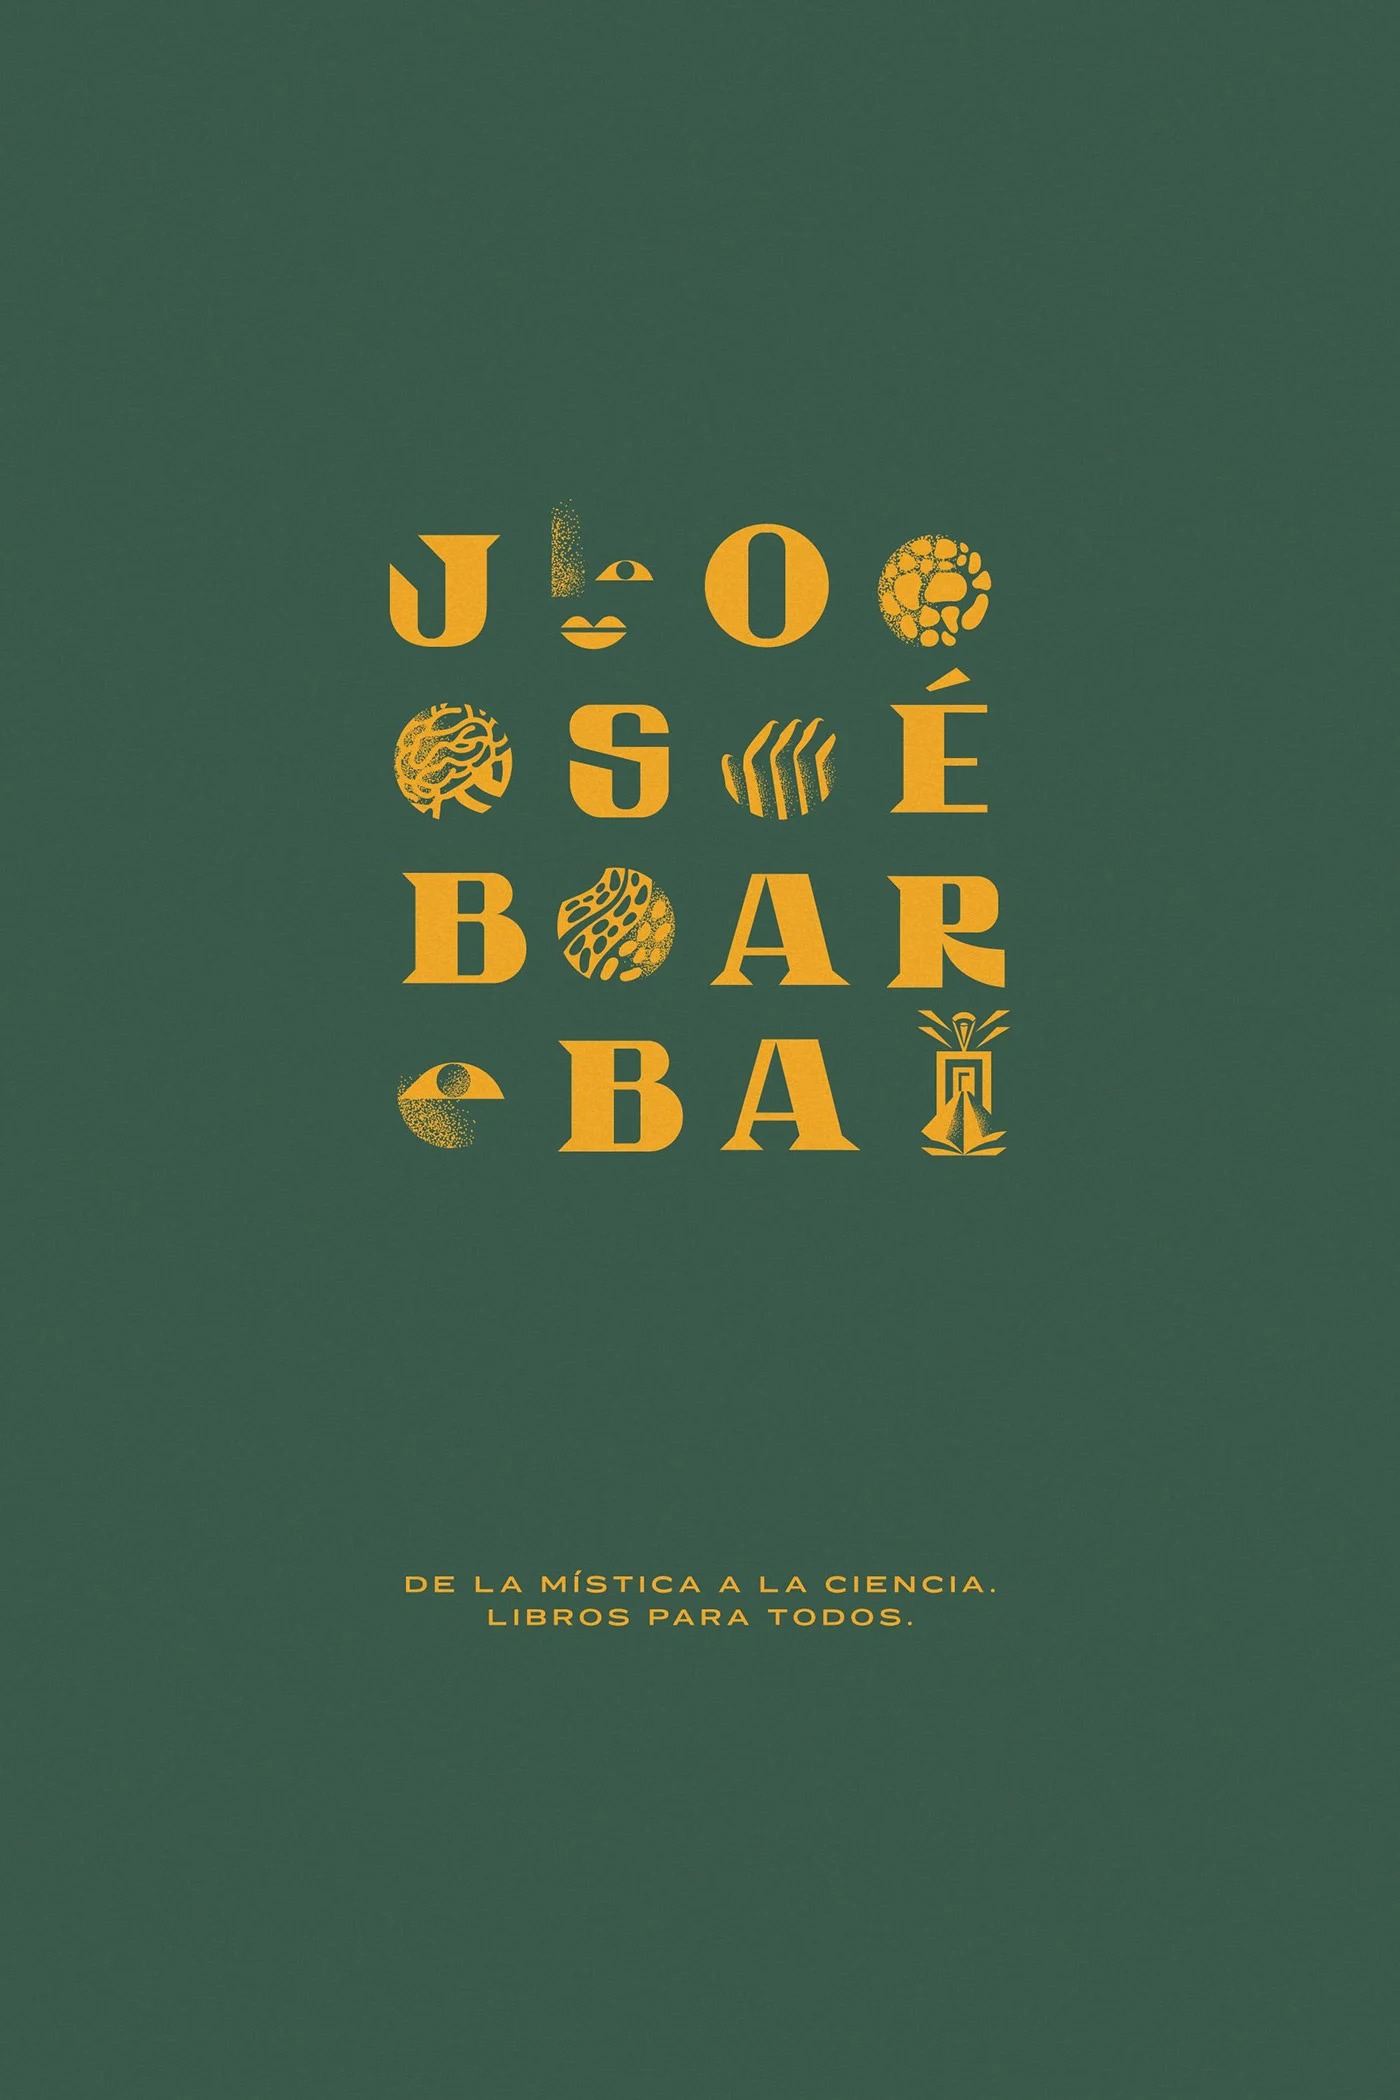 José Barba Librero复古书店视觉形象设计